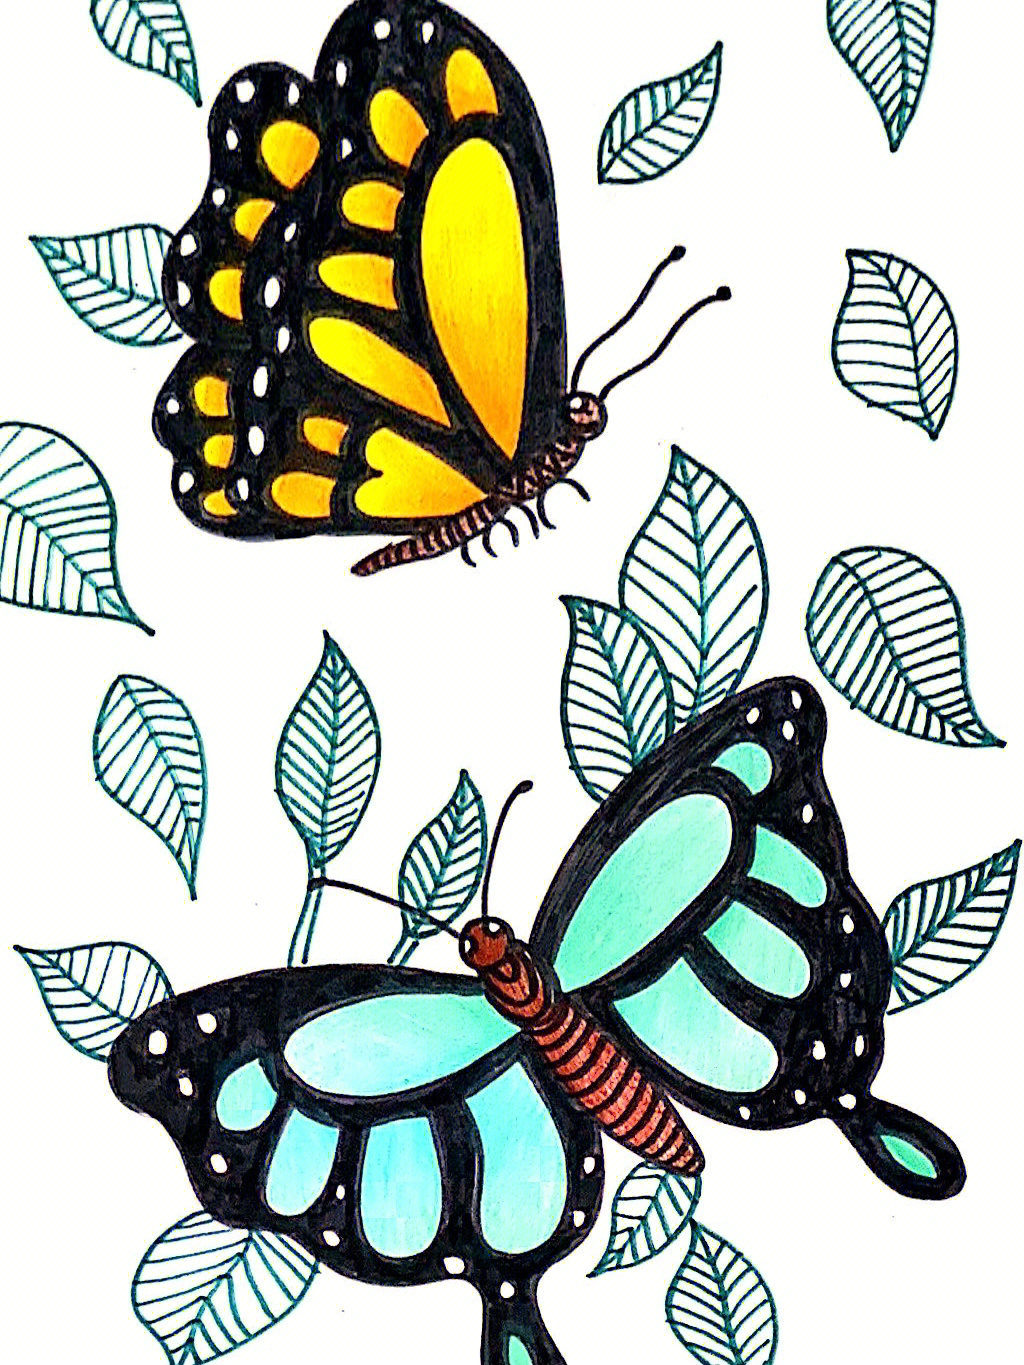 线描画蝴蝶简单图片